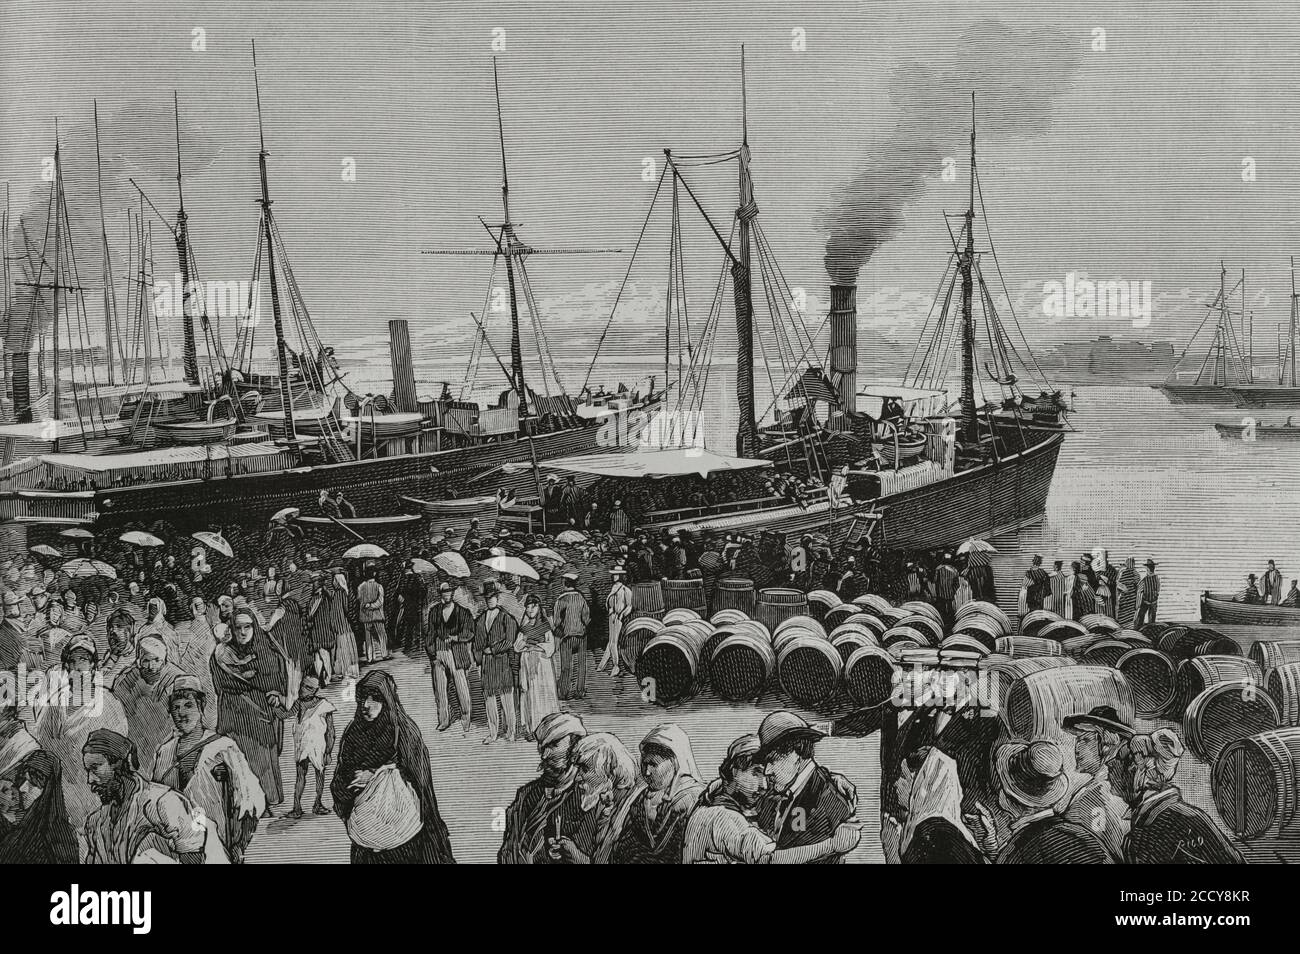 Die Spanier in der Region Oran. Während des zweiten Drittels des 19. Jahrhunderts gingen viele Spanier als Bauern, um ihr Glück in Nordalgerien zu machen. Am 11. Juni 1881 griffen die Männer des Marabout Mohamed el-Arbi, bekannt als BU-Amena, Bauern an, die in den Oranien-Agrarfeldern Halfalia und Frendah bei Saida (Algerien) Espartos sammelten. Es verursachte Panik unter den europäischen Emigranten. Viele von ihnen kehrten in ihre Herkunftsländer zurück. 9,000 Spanier taten dies zwischen dem 11. Und 22. Juni 1881. Hafen von Alicante (Spanien). Ausschiffung spanischer Arbeiter, Flüchtlinge aus Oran, die von der zurückgeführt wurden Stockfoto